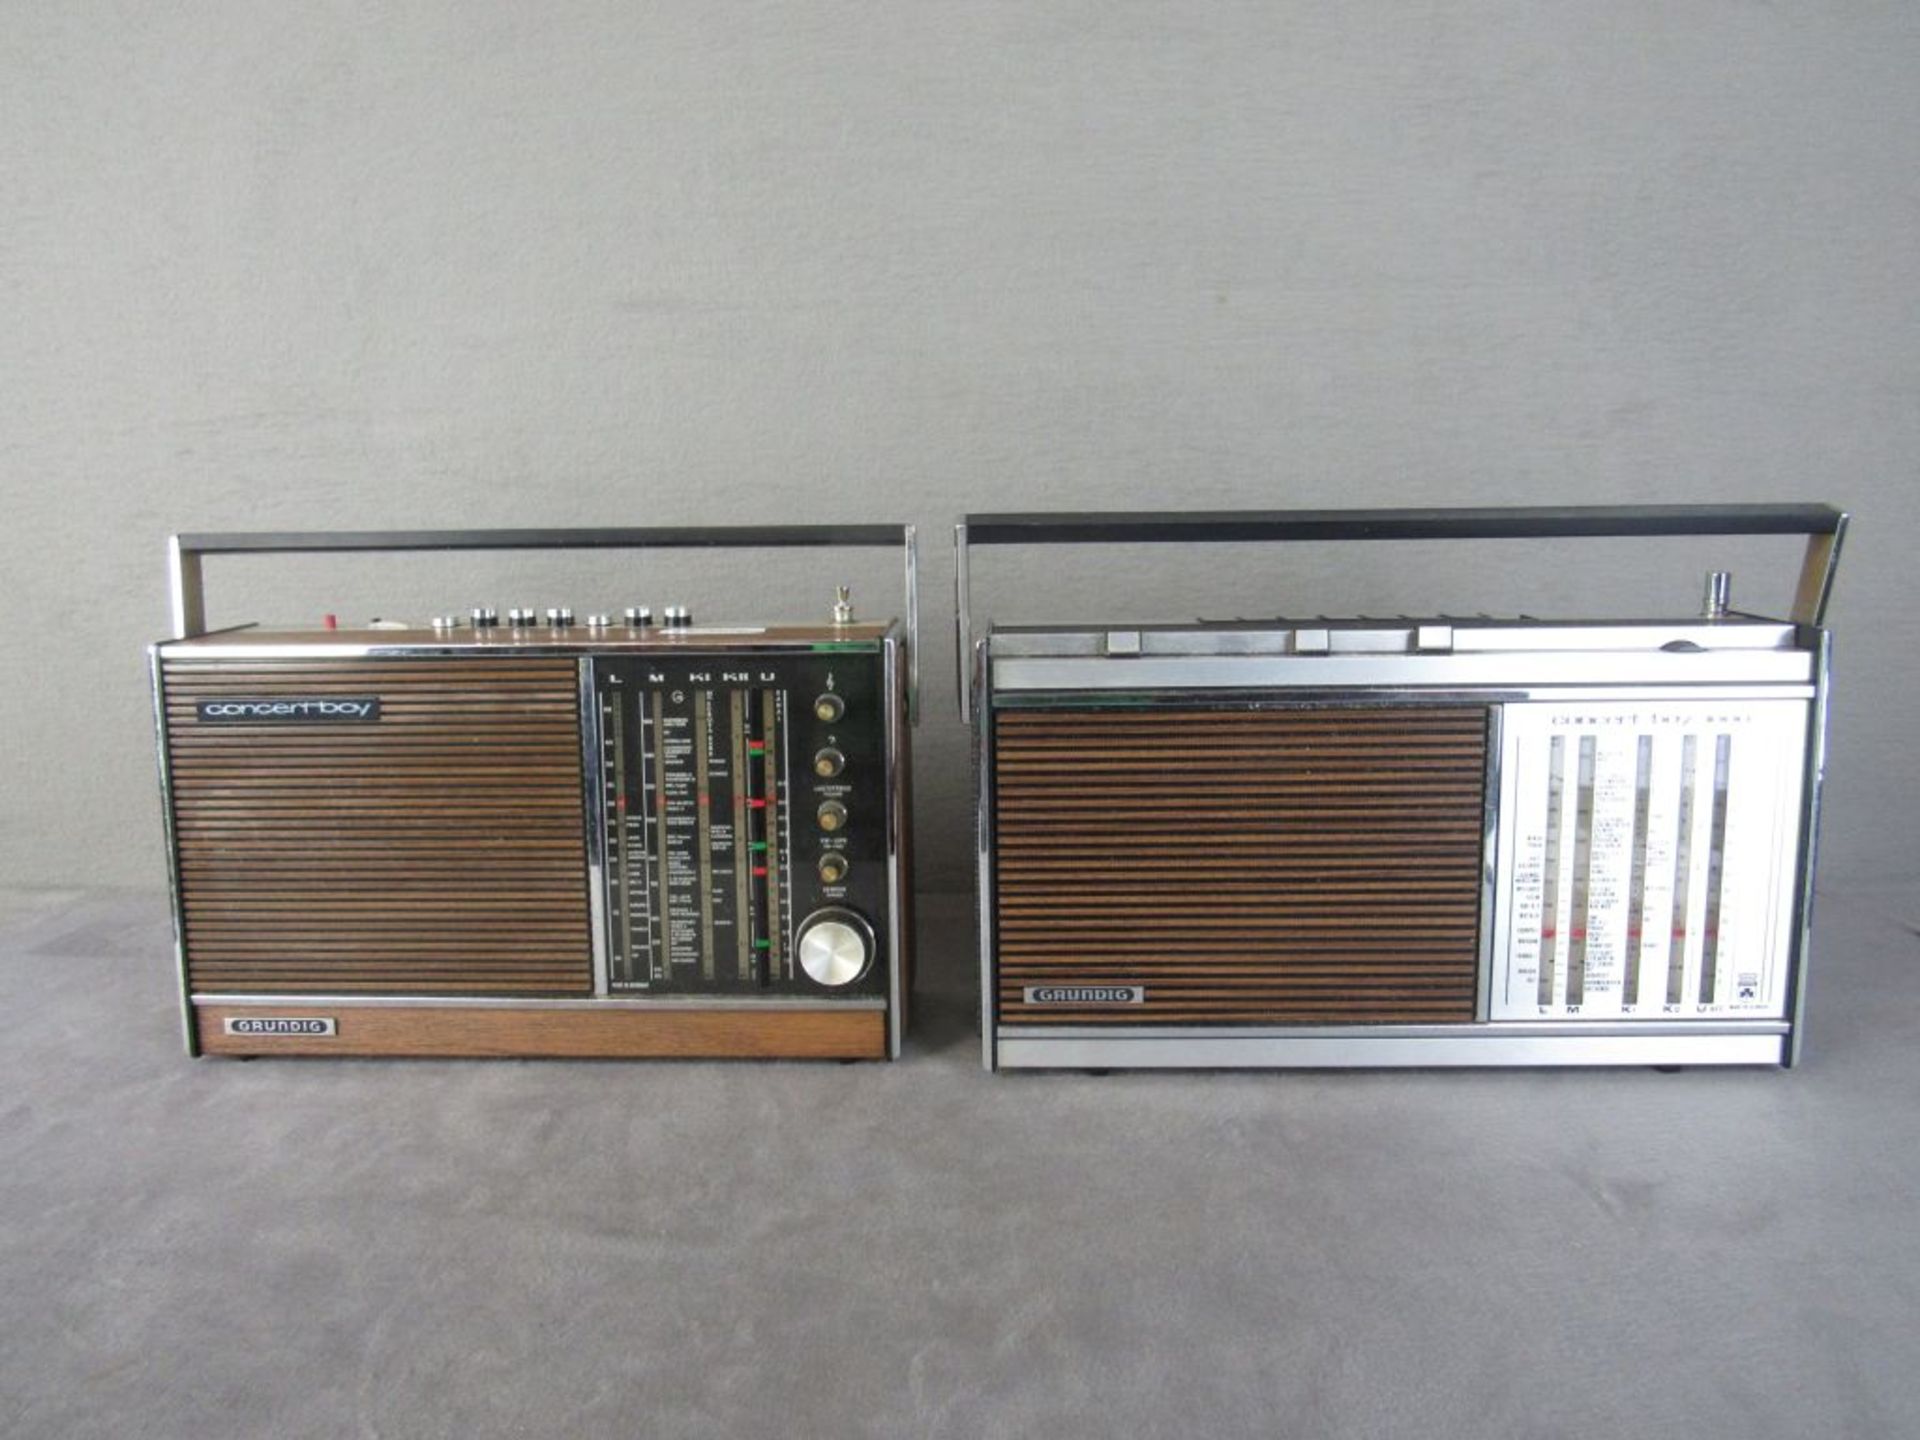 Zwei Kofferradios Grundig Concertboy Länge:37cm und 39cm